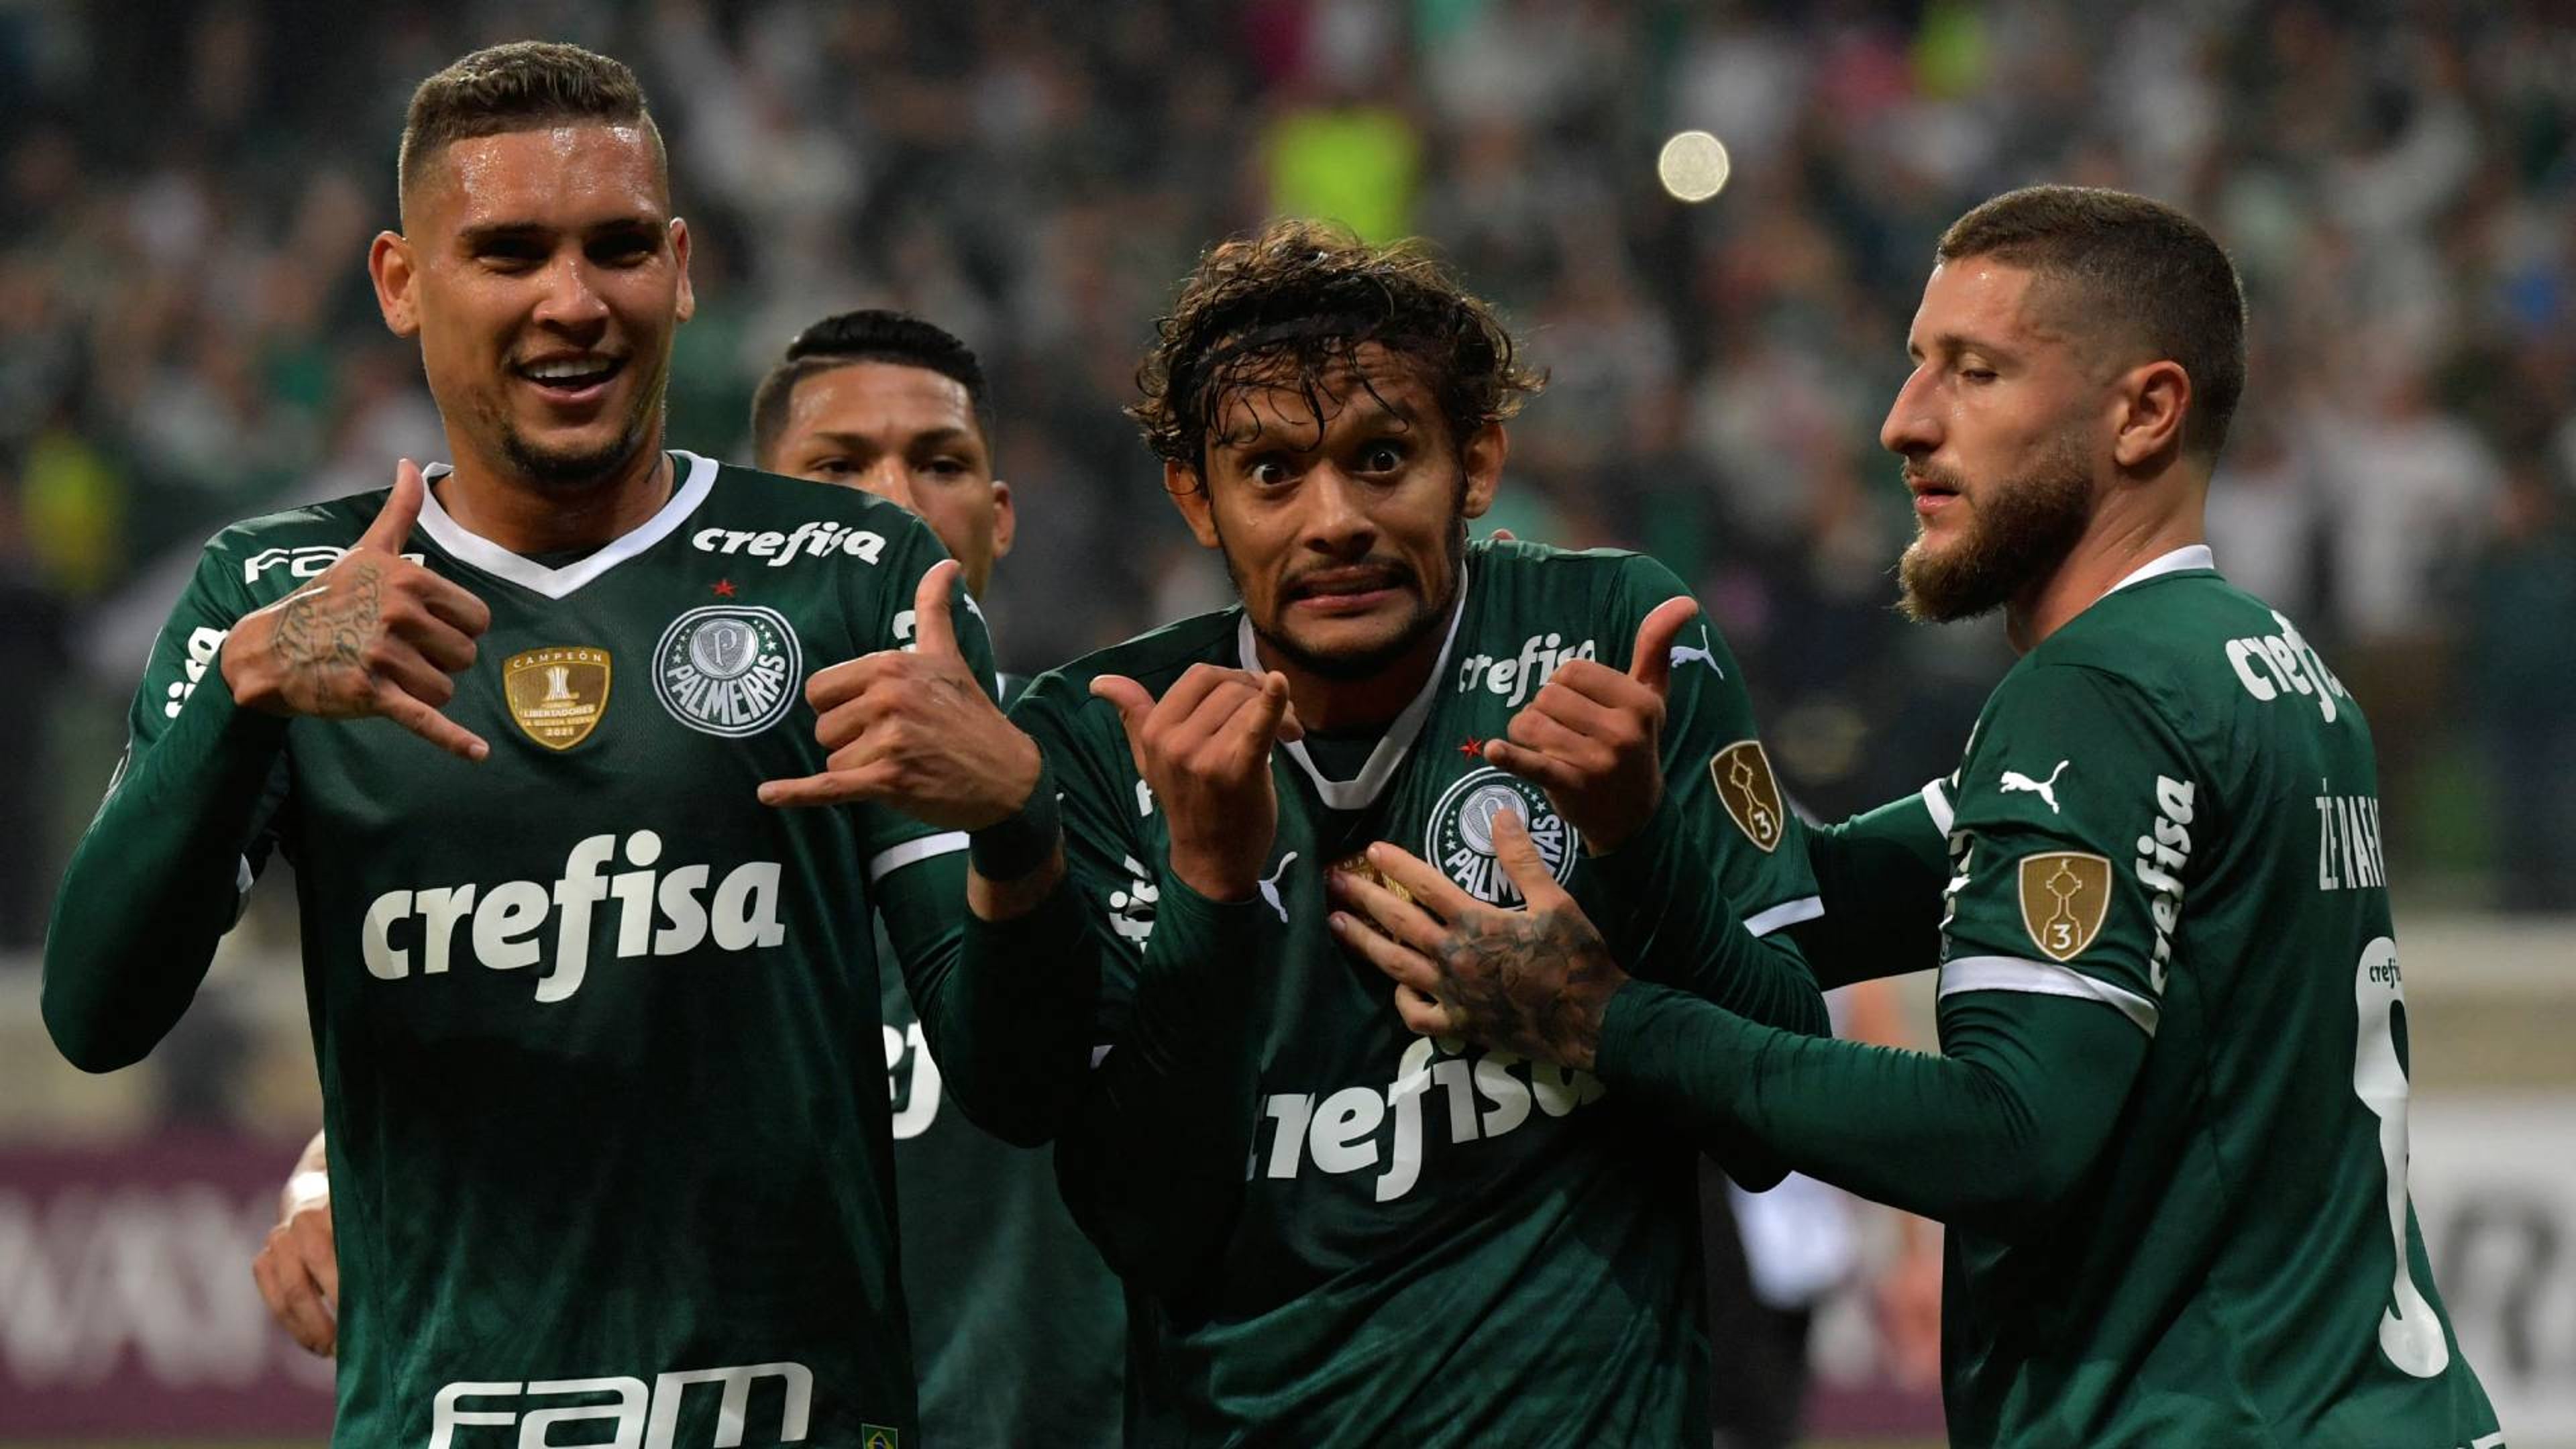 A escalação do Palmeiras para o próximo jogo